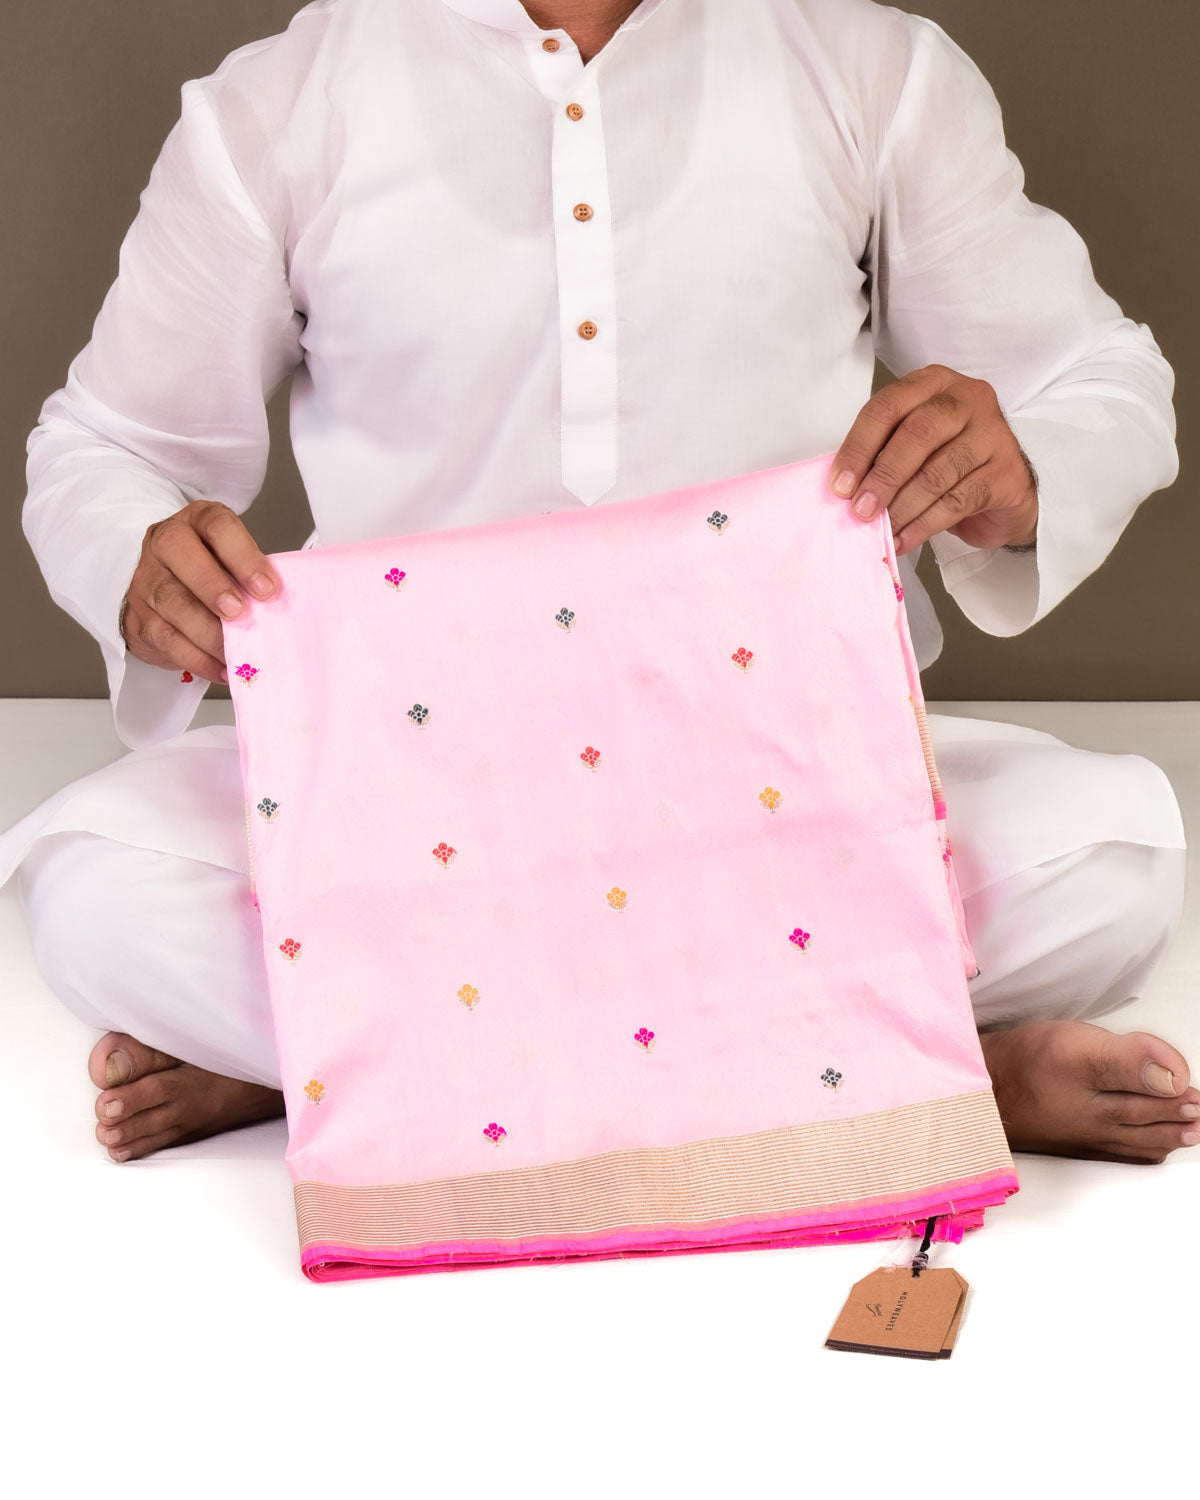 Pink Banarasi Multi-color Alfi Buti Kadhuan Brocade Handwoven Katan Silk Saree-HolyWeaves